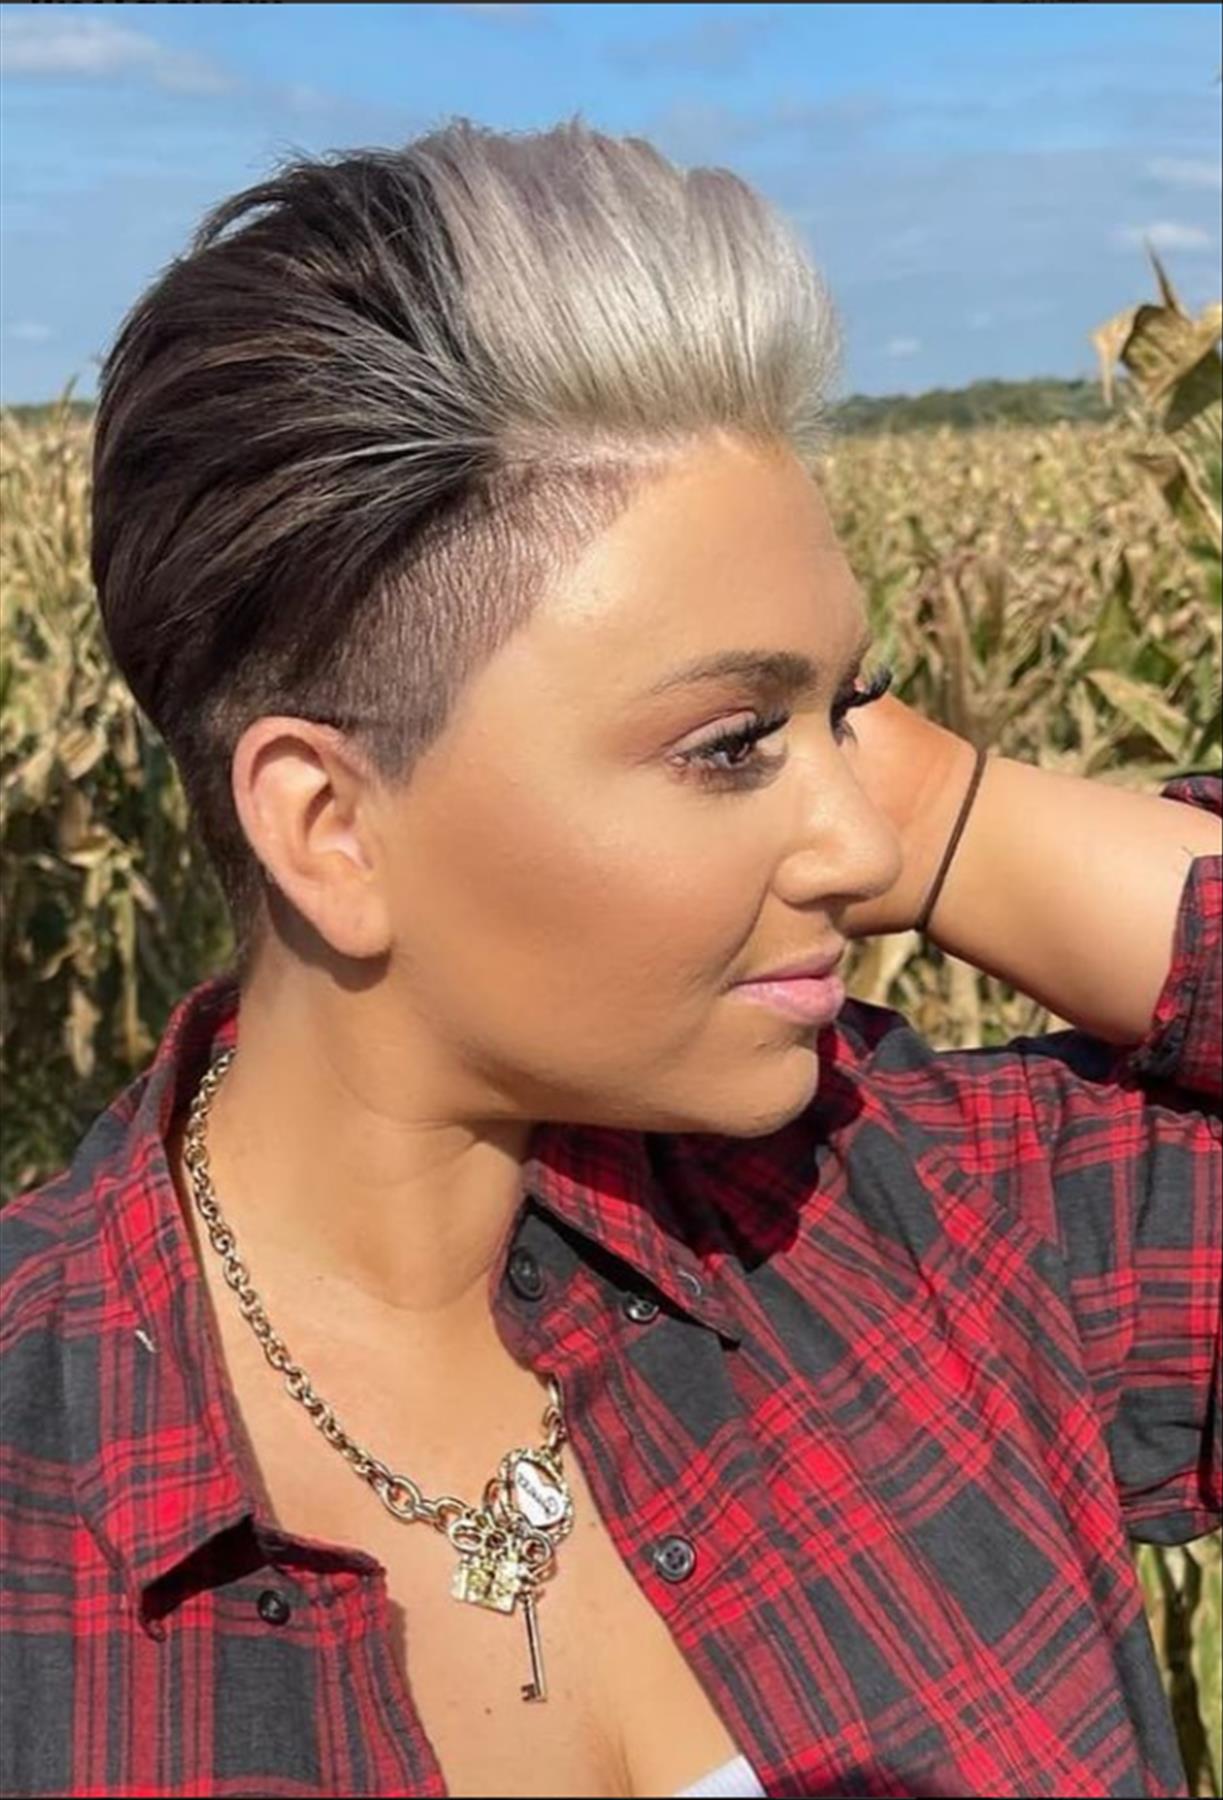 Best short pixie haircut for women trending now